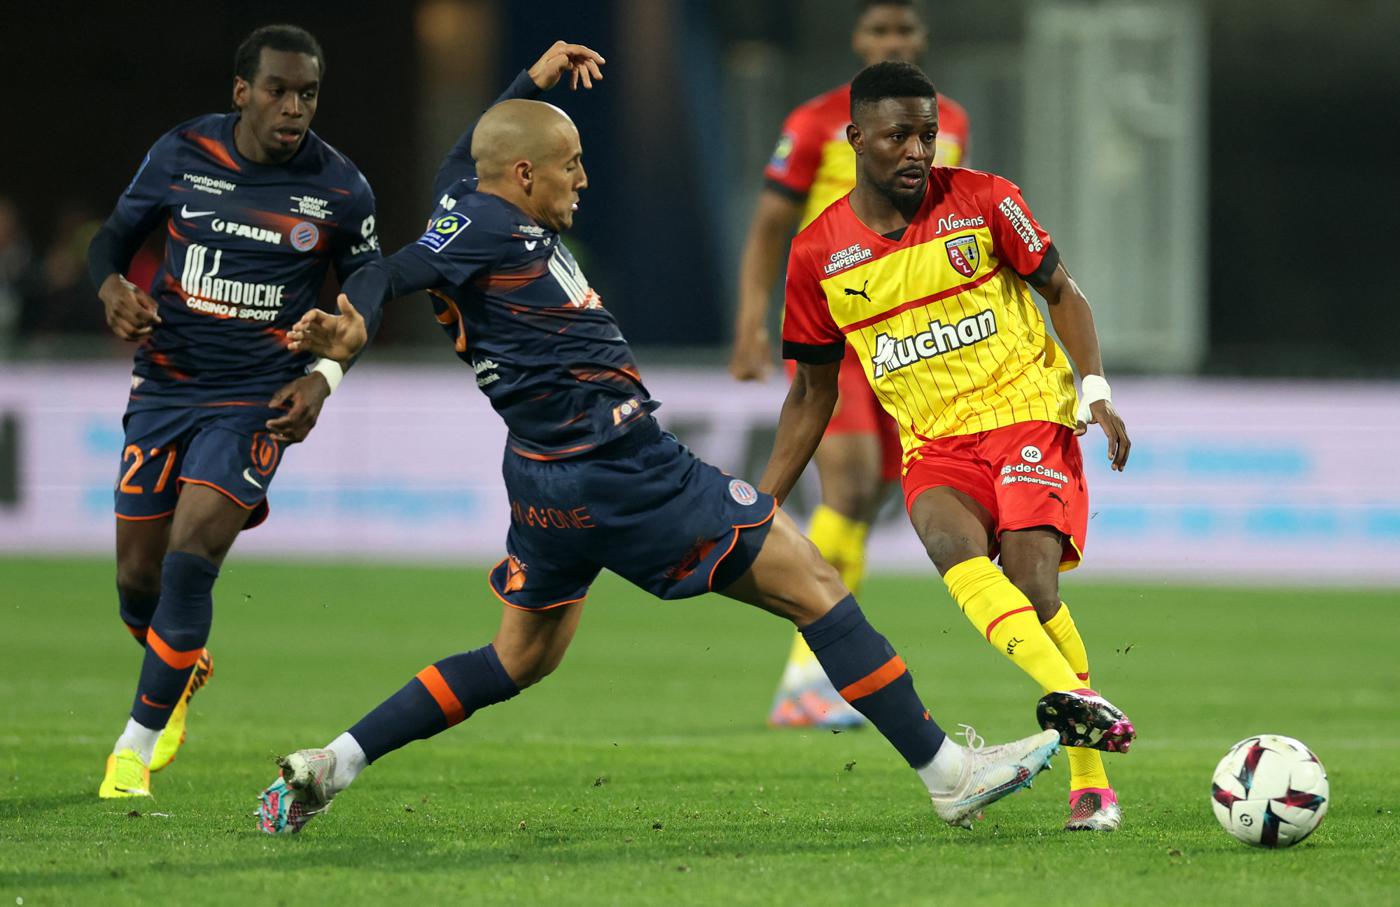 Montpellier gegen Lans - 1-1. Französische Meisterschaft, Runde 25. Spielbericht, Statistik